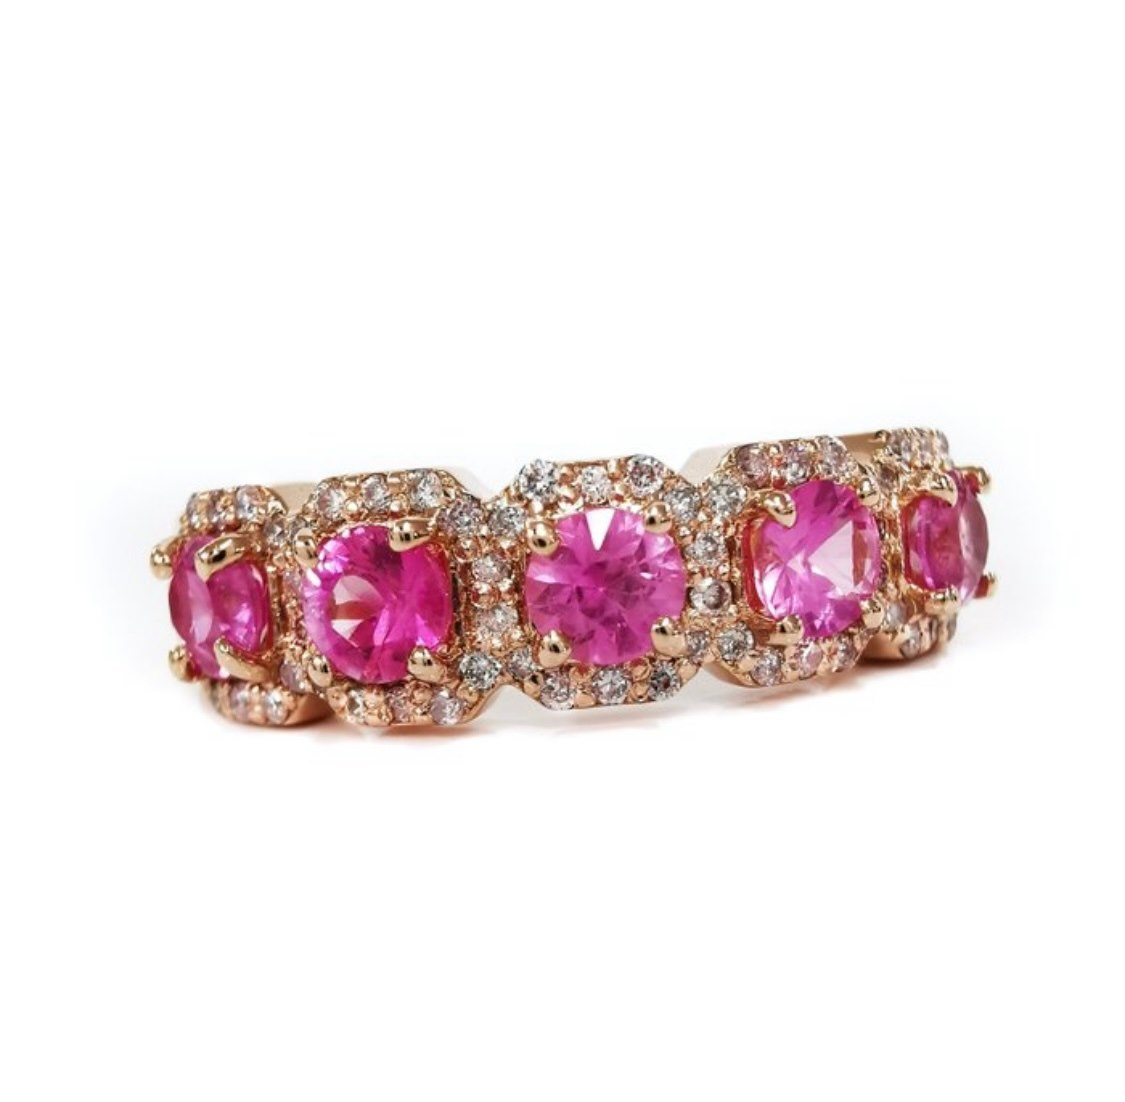 .. - Prsten se růžovými safíry 1 ct a diamanty 0,32 ct, zlato 585/1000, značeno platnou puncovní značkou "labuť", hrubá hmotnost 3,75 g